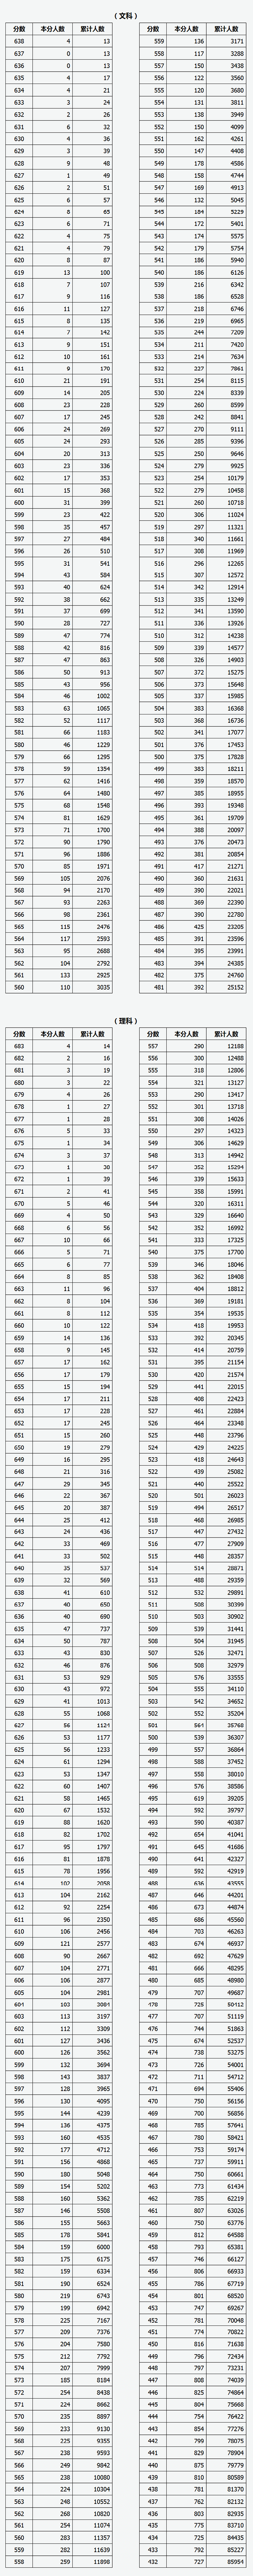 山西 - 2019年普通高考成绩分段统计表